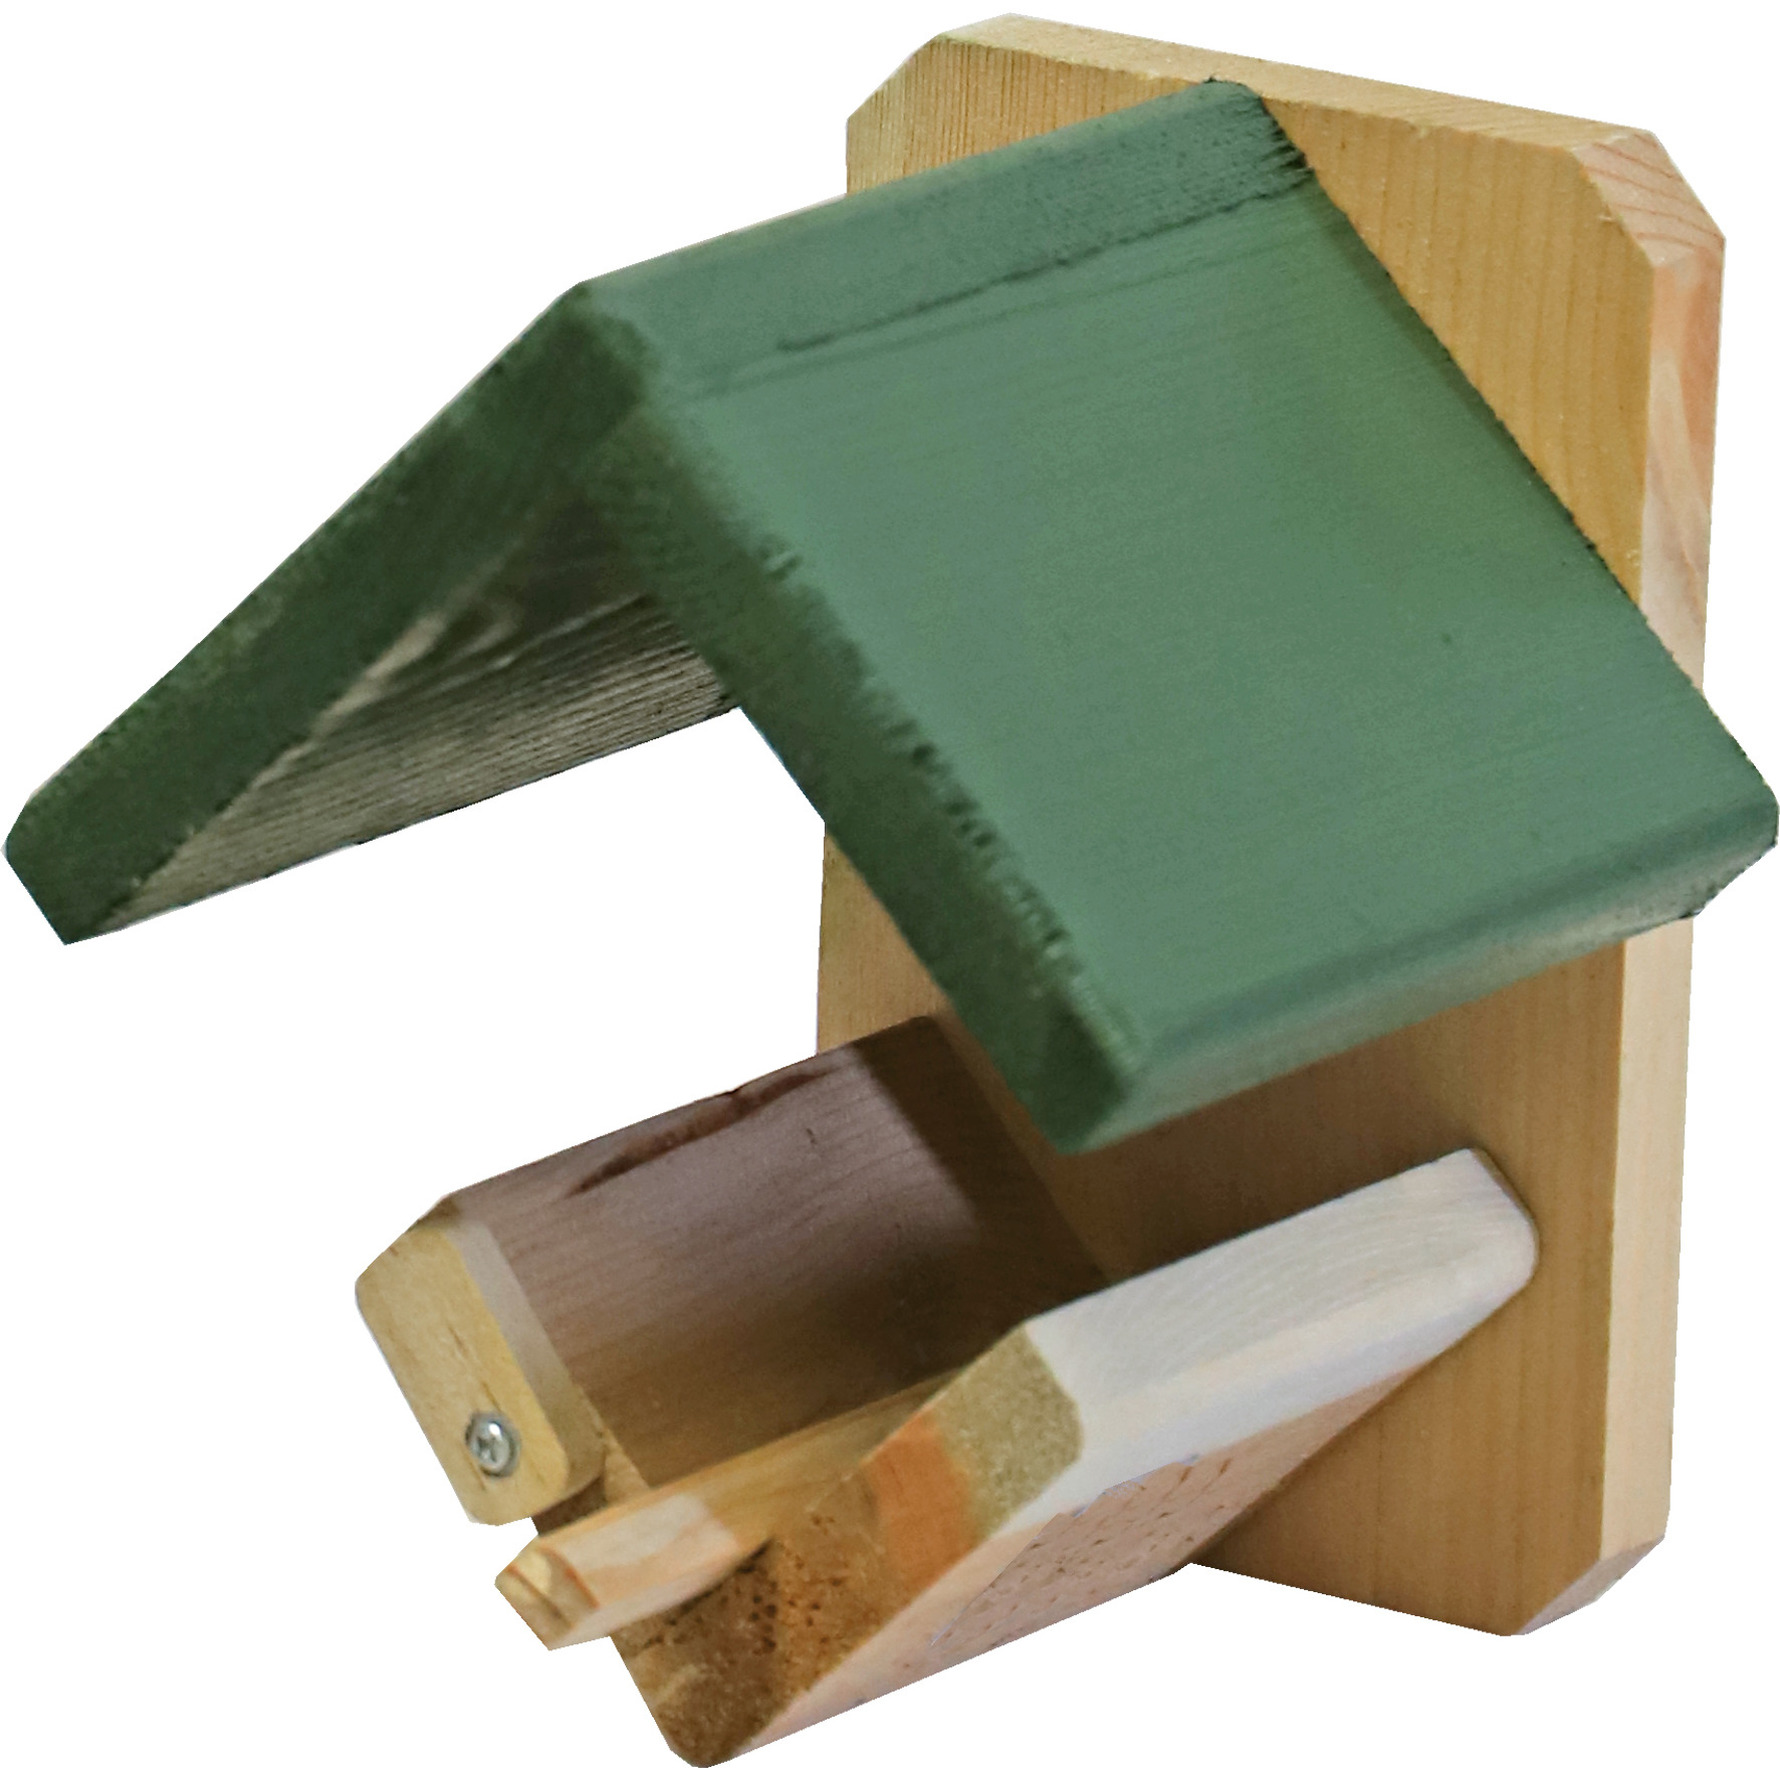 Vogelhuisje/voederhuisje/pindakaashuisje hout met groen dakje 16 cm